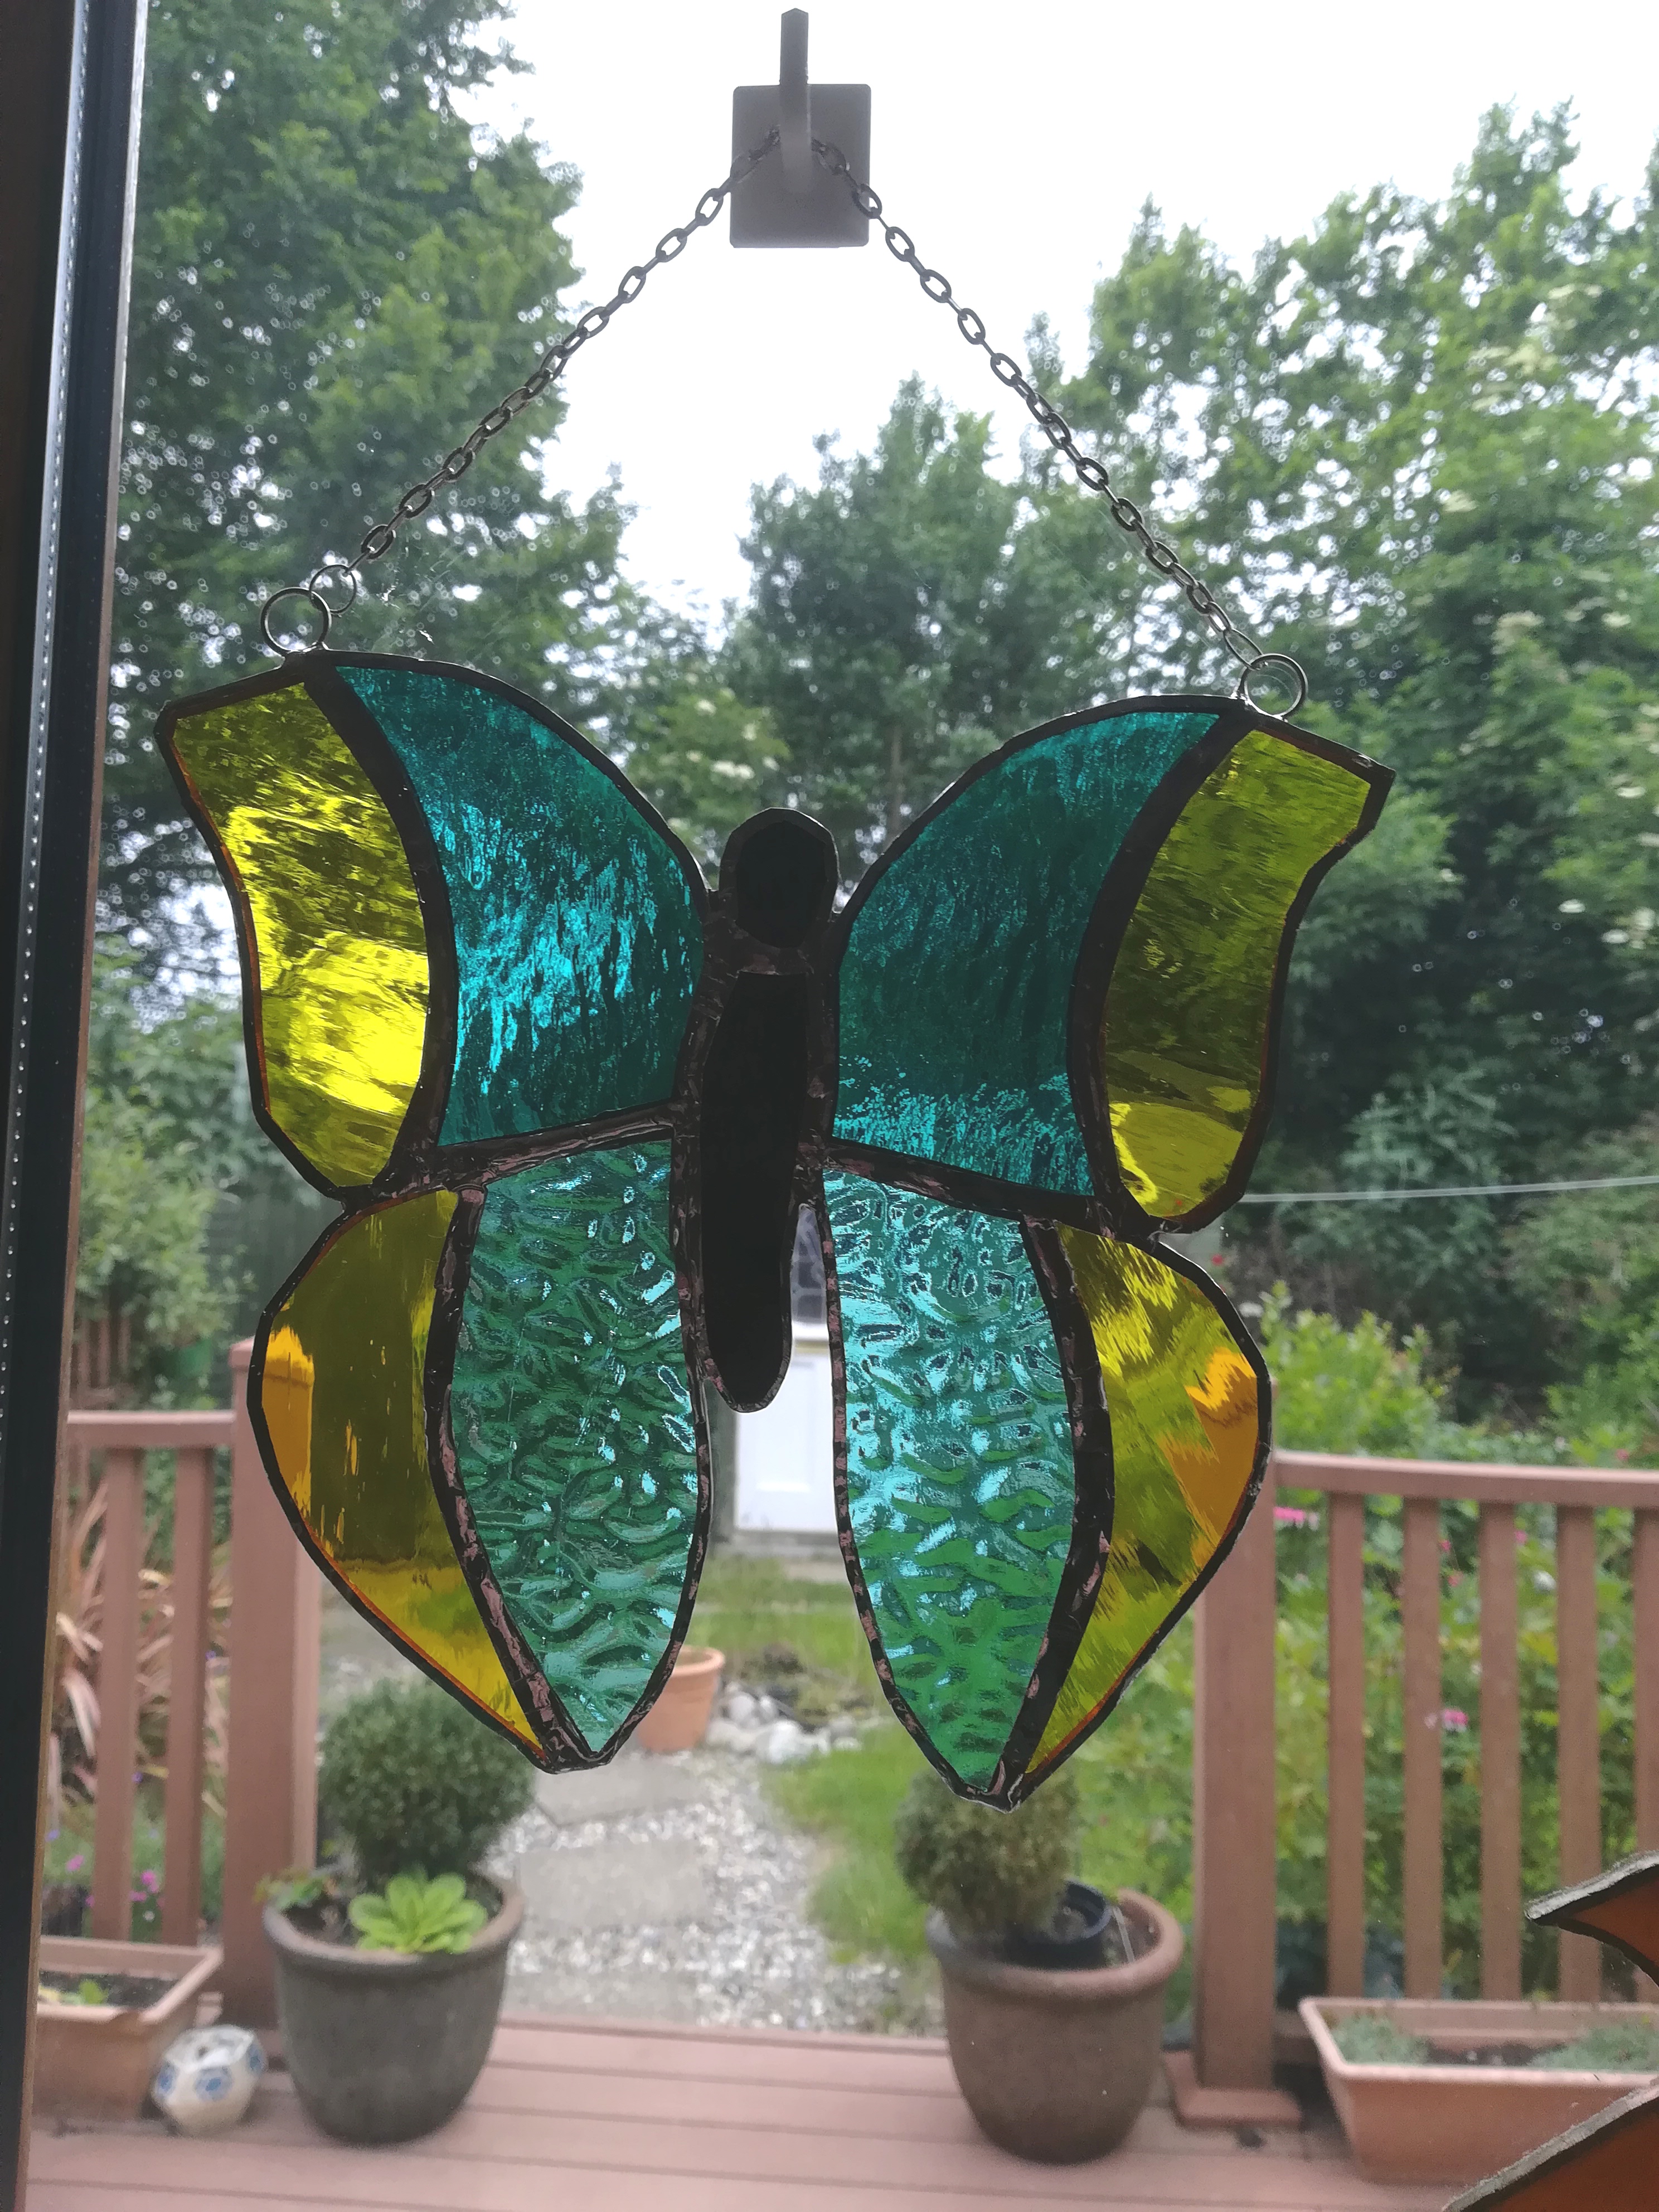 Butterfly garden or window ornament